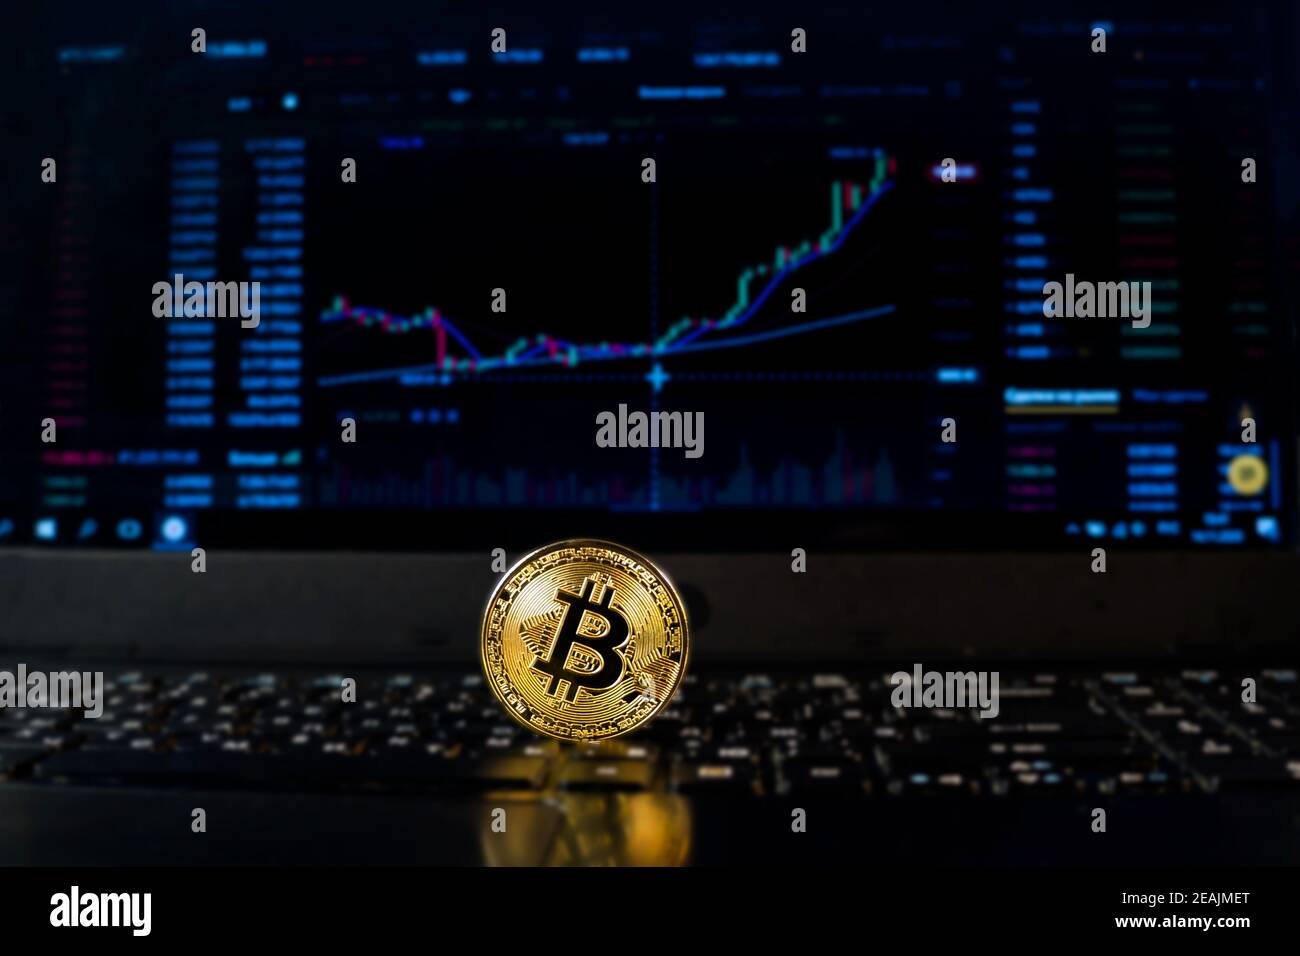 Eine Bitcoin-Münze auf dem Hintergrund eines Diagramms, das den Kurs auf einer Wechselstube oder einem Forex anzeigt. Bitcoin-Wechselkurs, elektronisches Geld oder Währung. Stockfoto